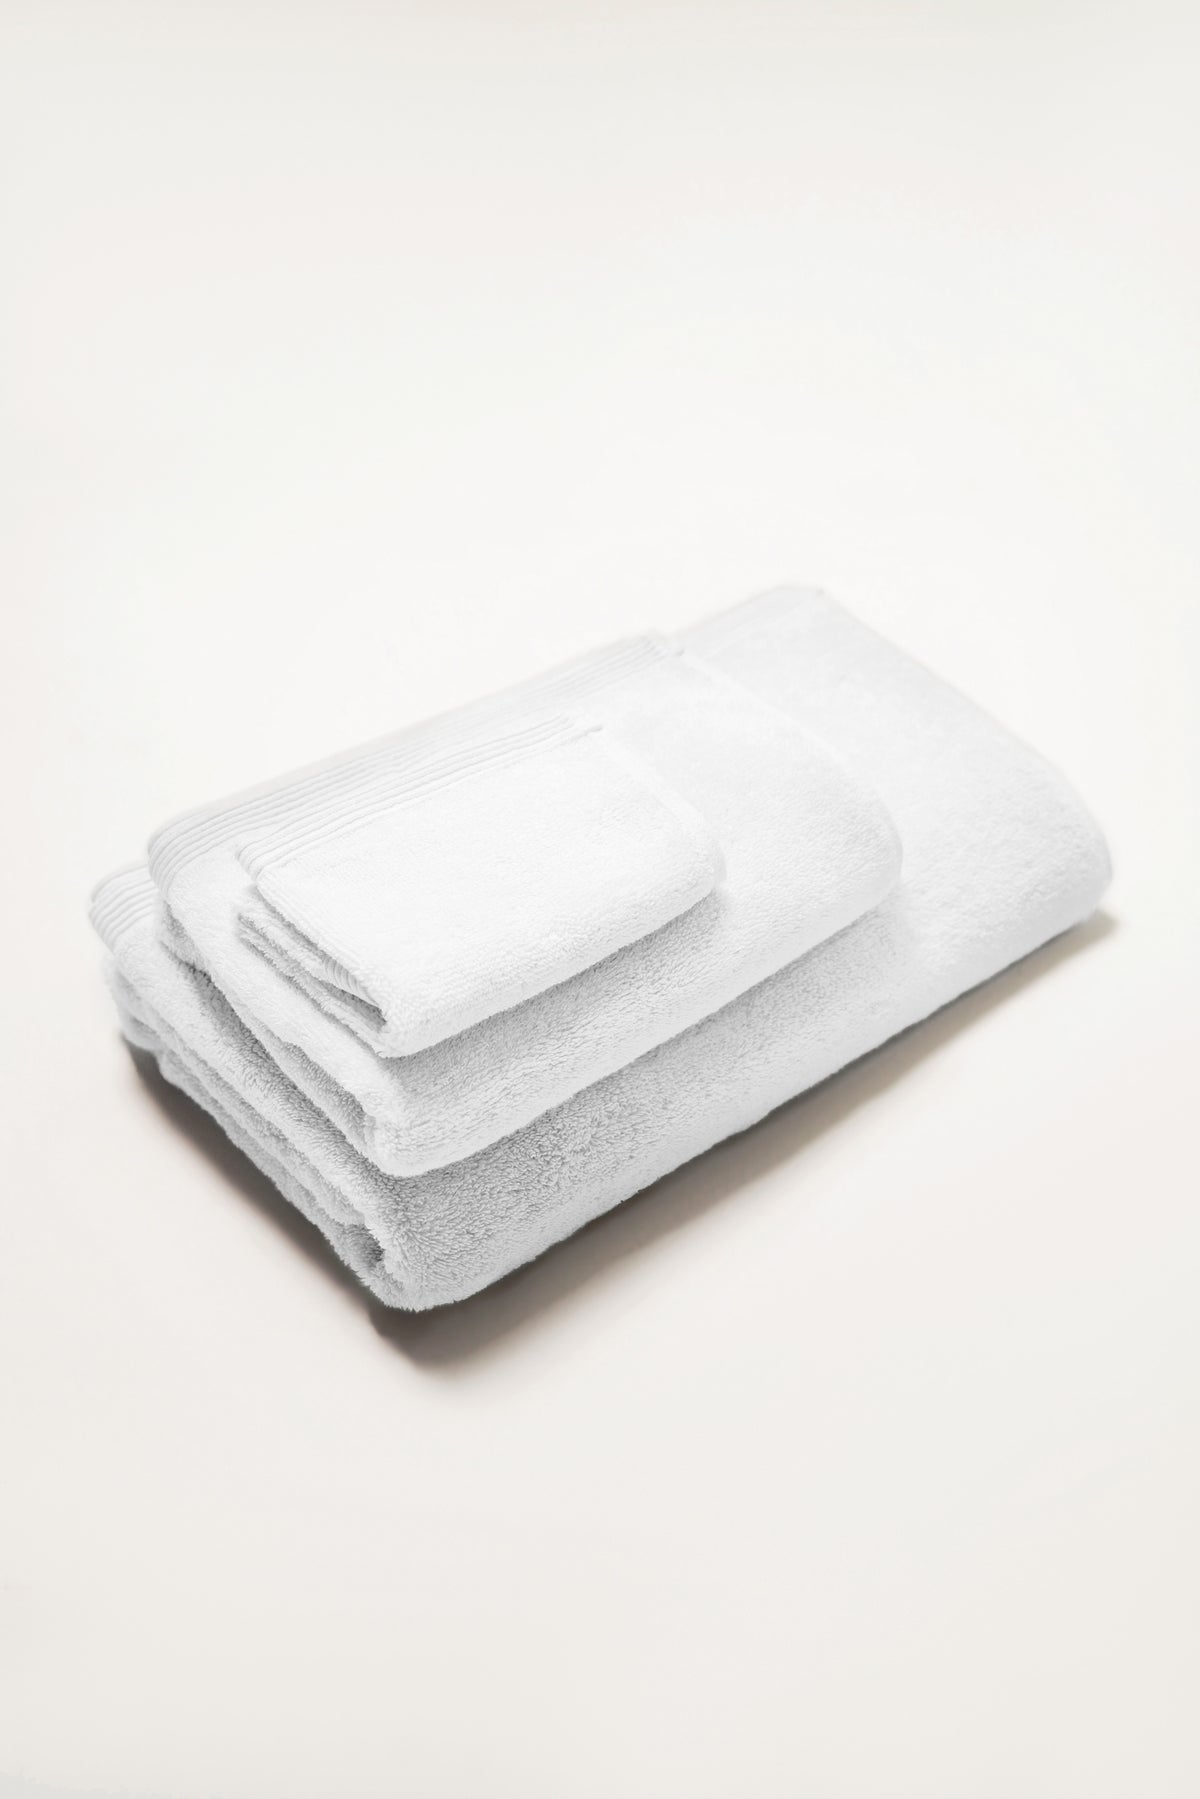 Seine, Bordered Cotton Hand Towel in White